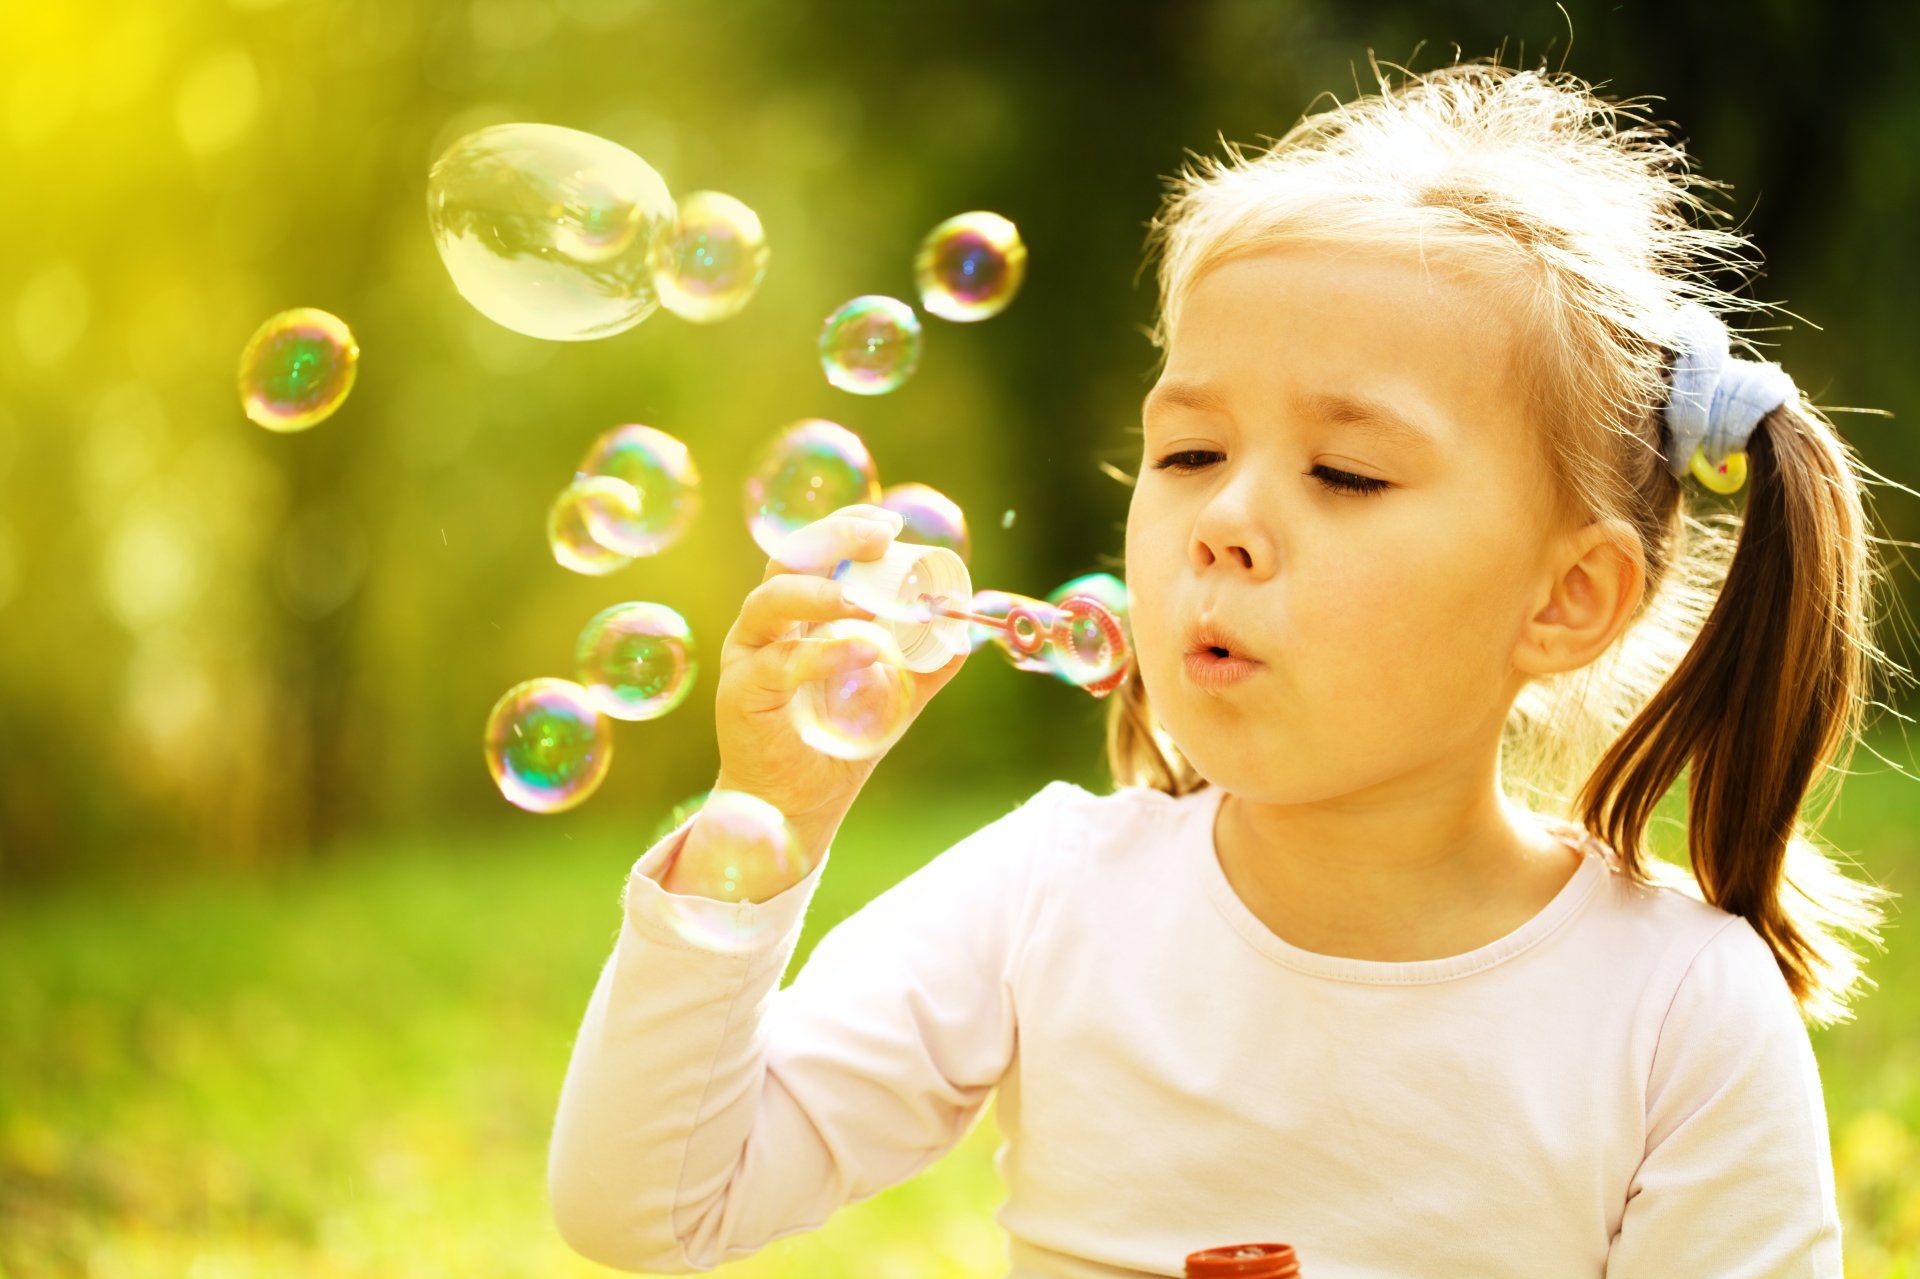 Звук пузырьков при дыхании. Дует мыльные пузыри. Дети и мыльные пузыри. Мальчик с мыльными пузырями. Фотосессия с мыльными пузырями.